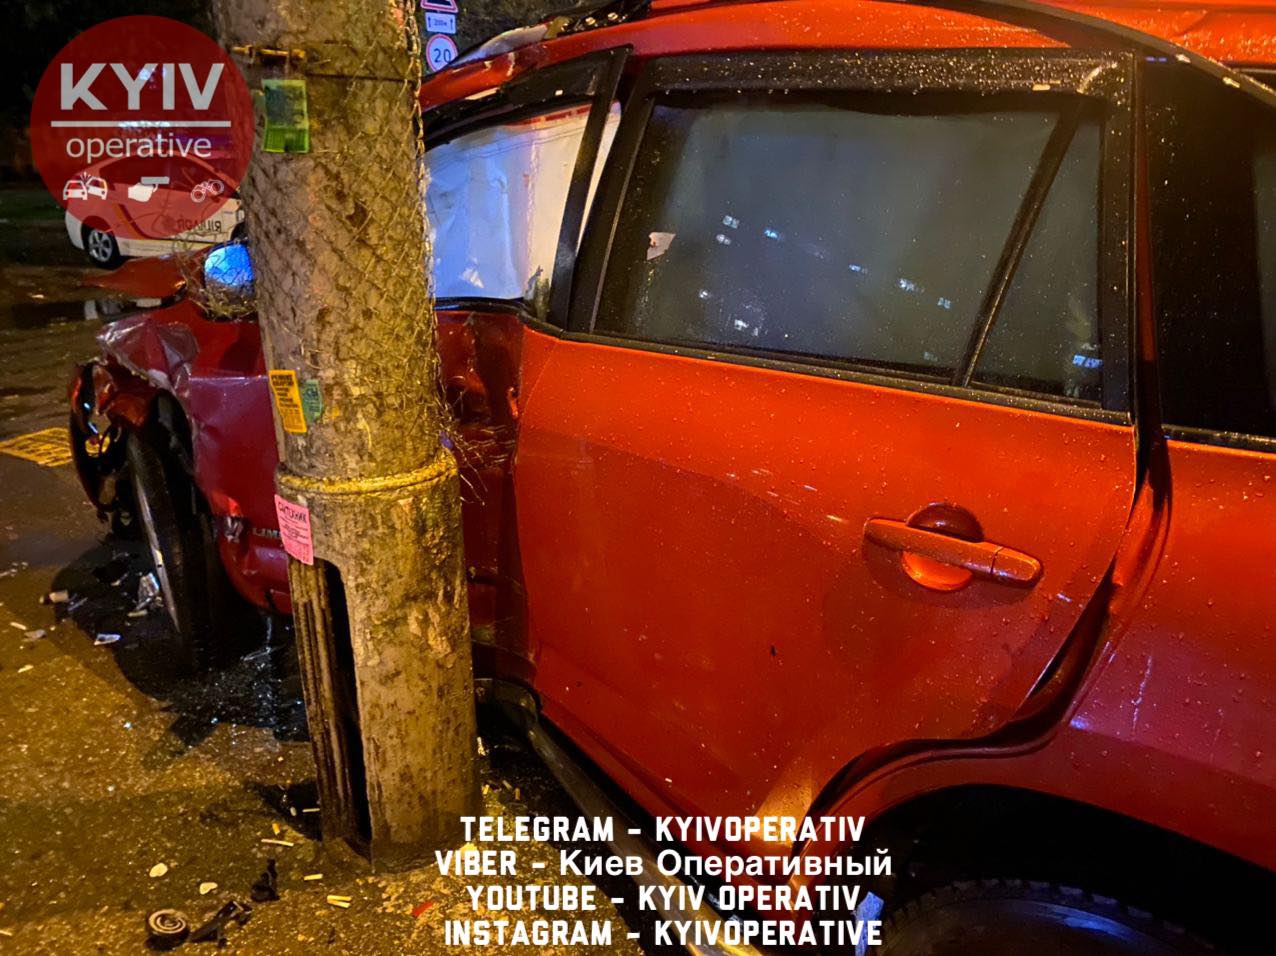 После столкновения двух машин в Киеве подросток остался без зуба. Фото: Киев оперативный